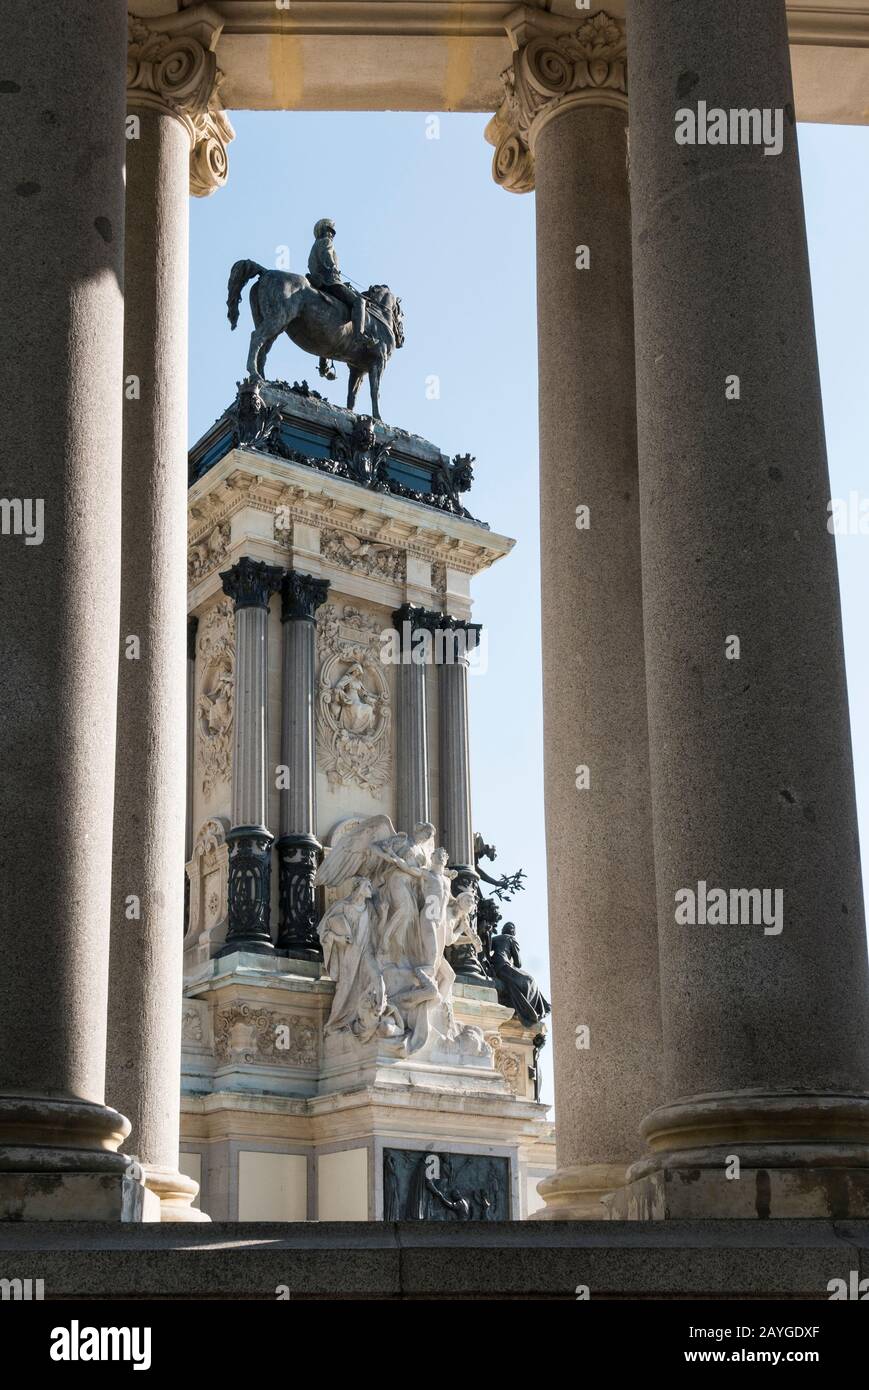 Eine Statue vor Colonnade am Alonso-II-Denkmal im Retiro-Park, Madrid, Spanien Stockfoto